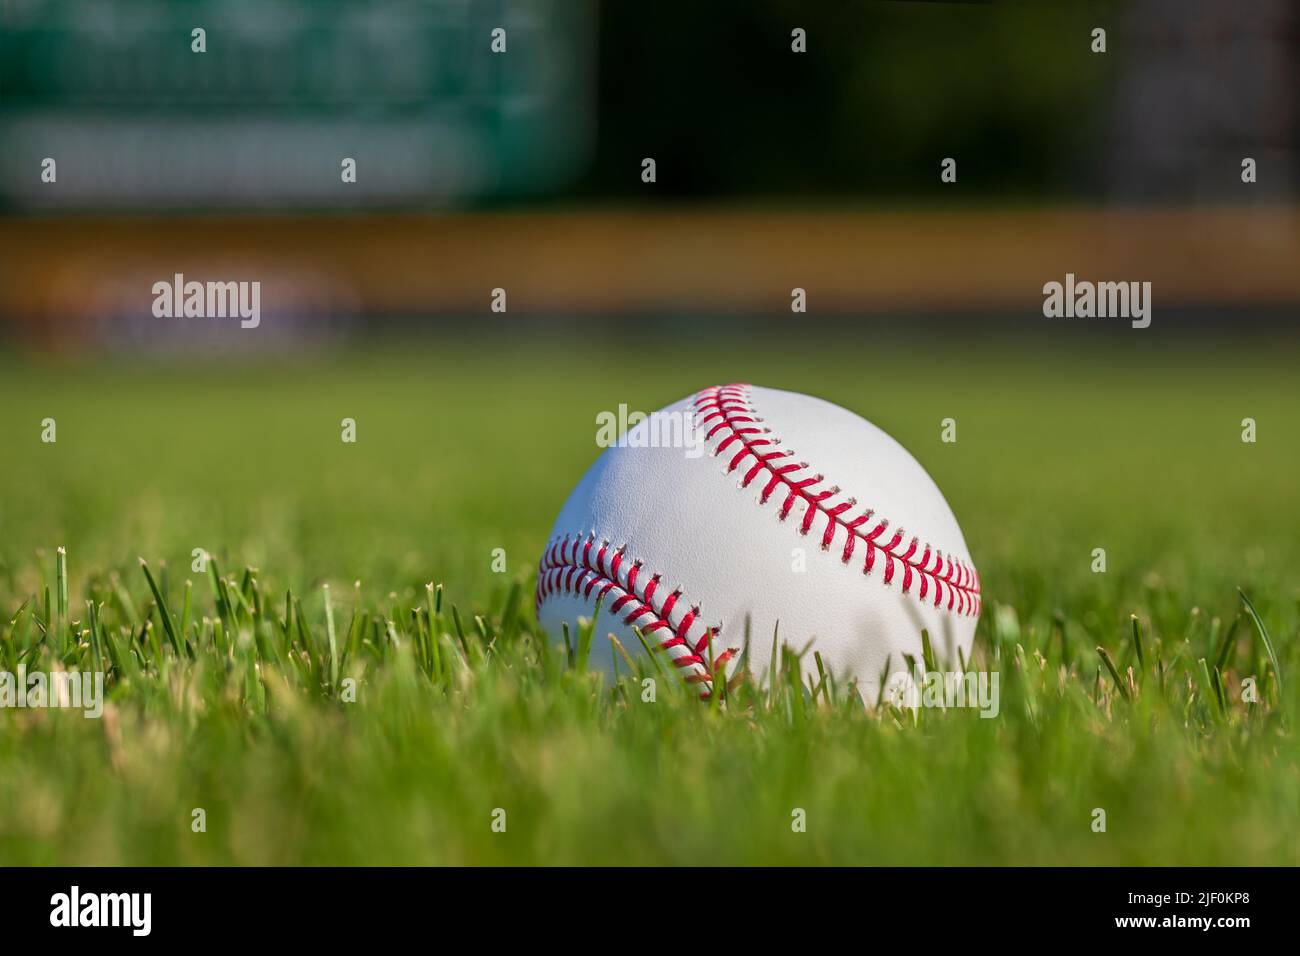 Vista de enfoque selectivo de ángulo bajo de una pelota de béisbol en hierba con una valla al aire libre en el fondo Foto de stock